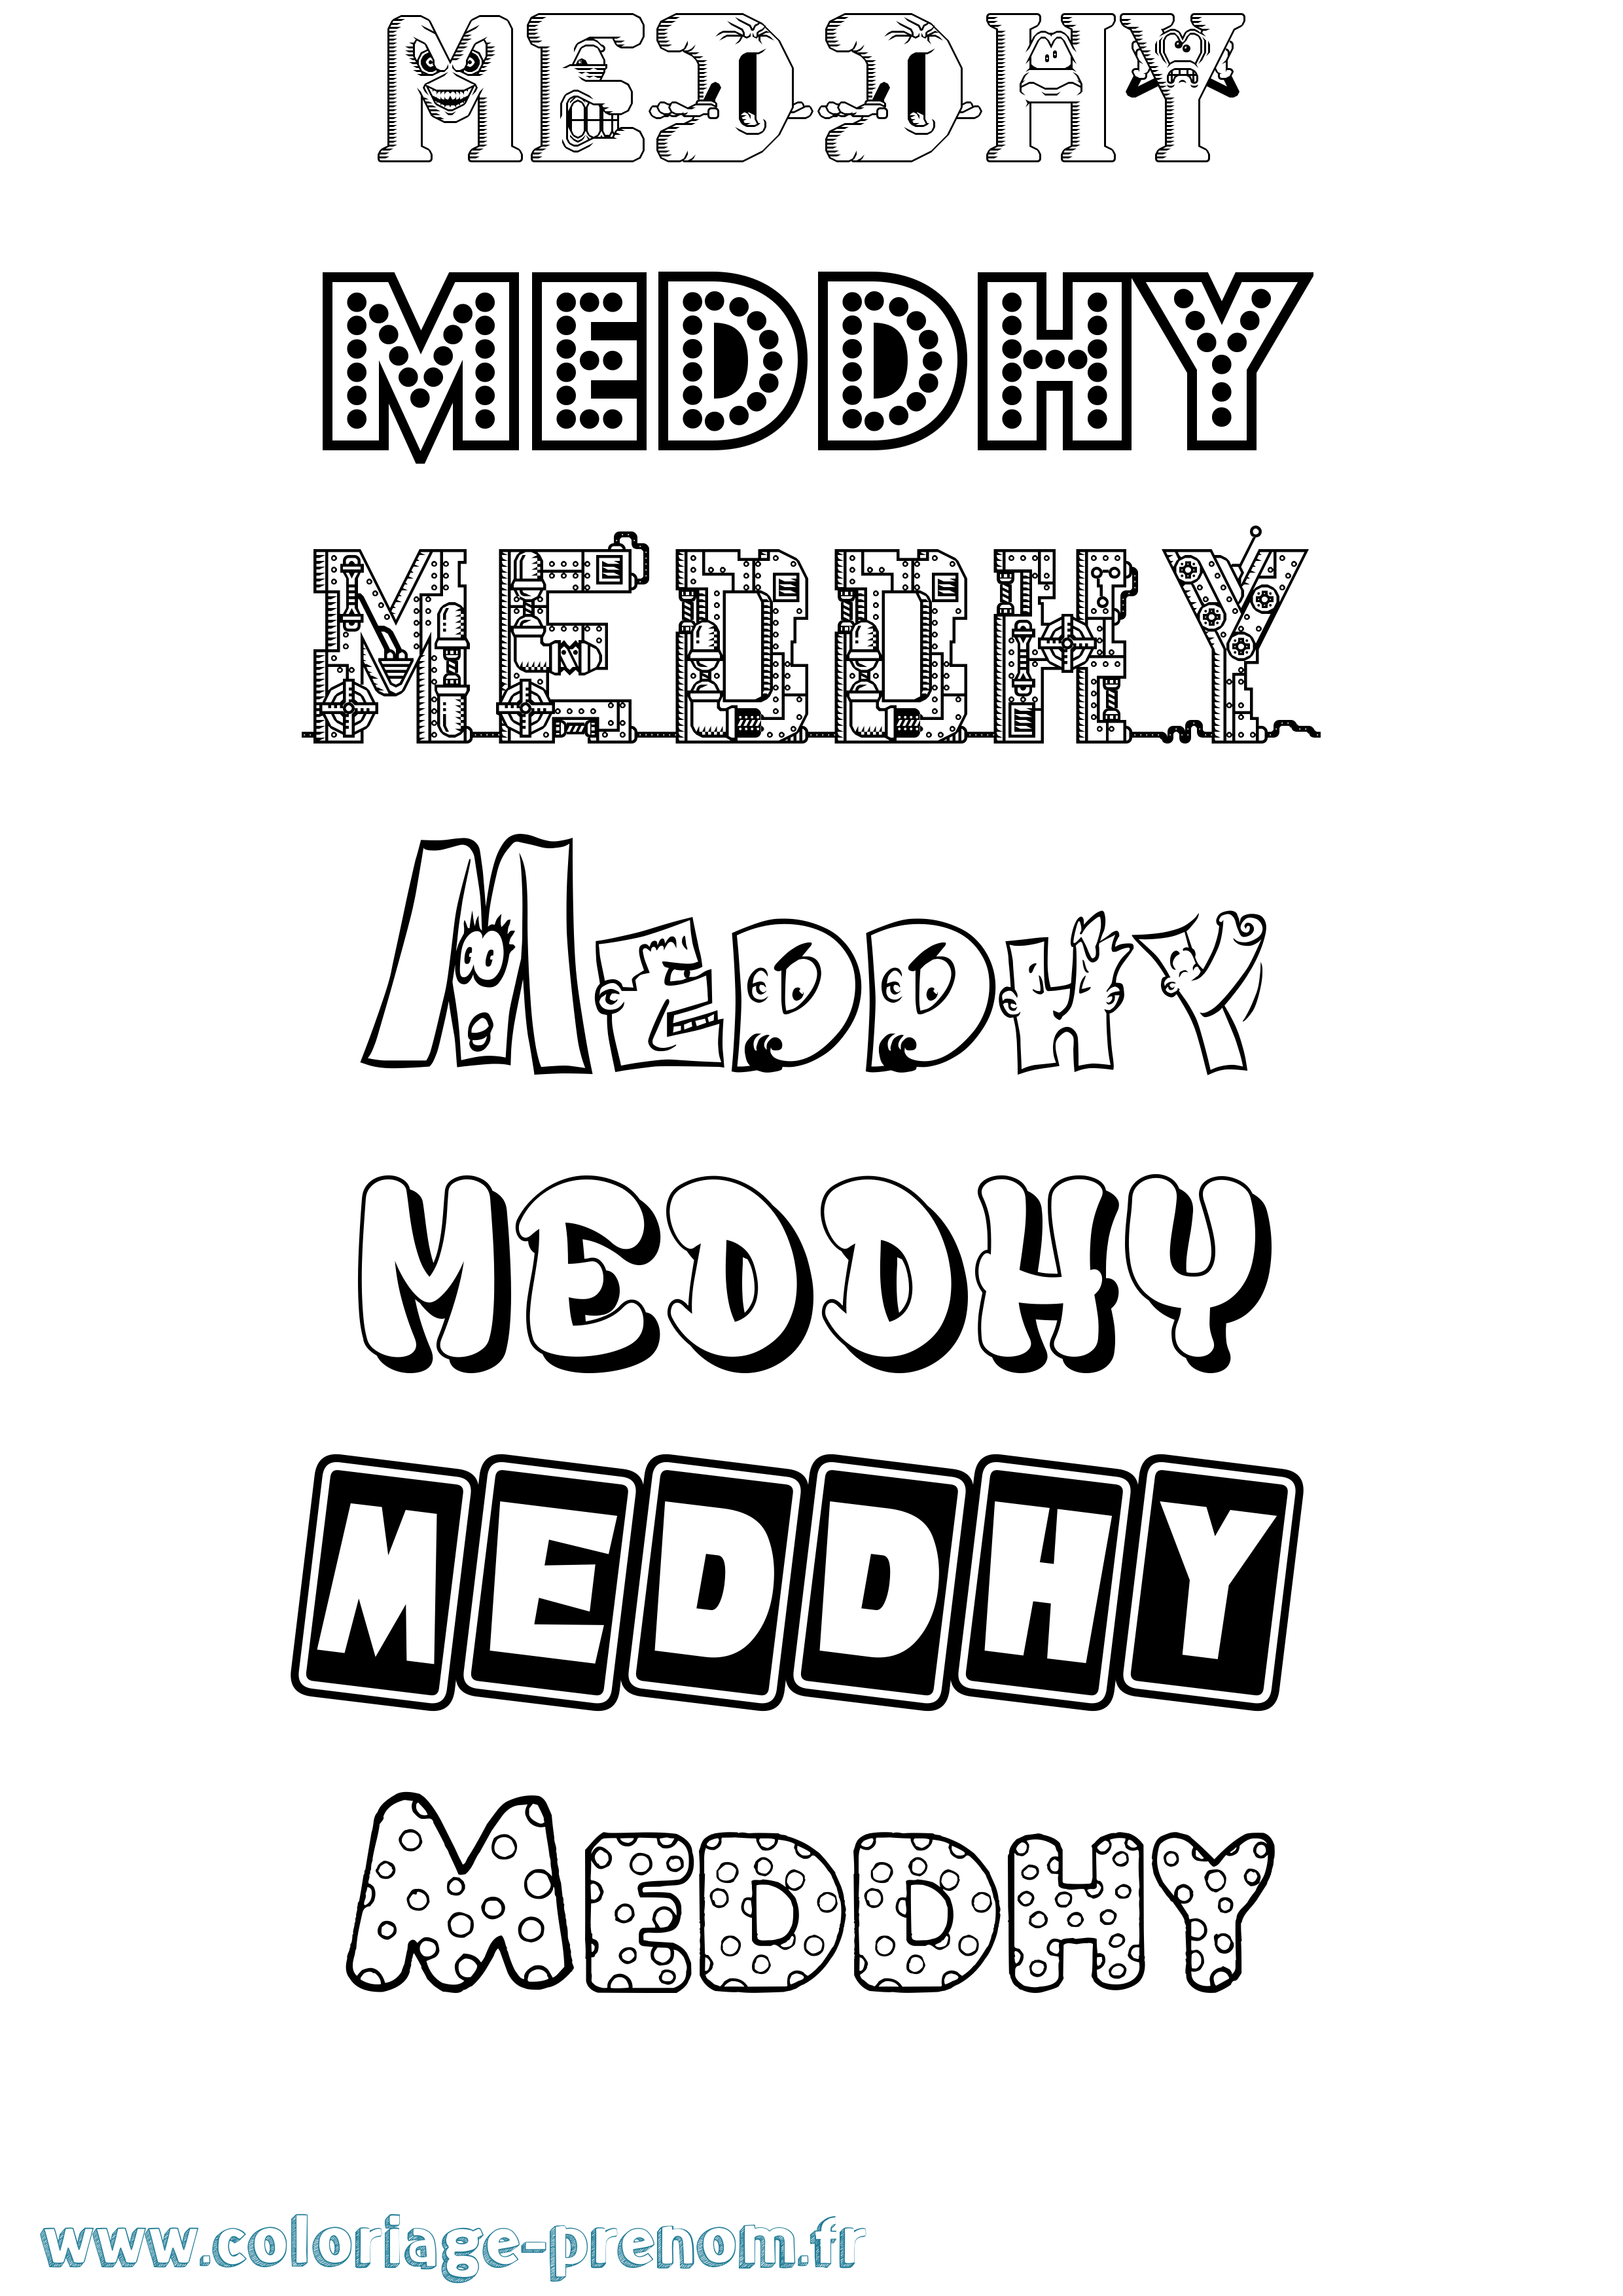 Coloriage prénom Meddhy Fun